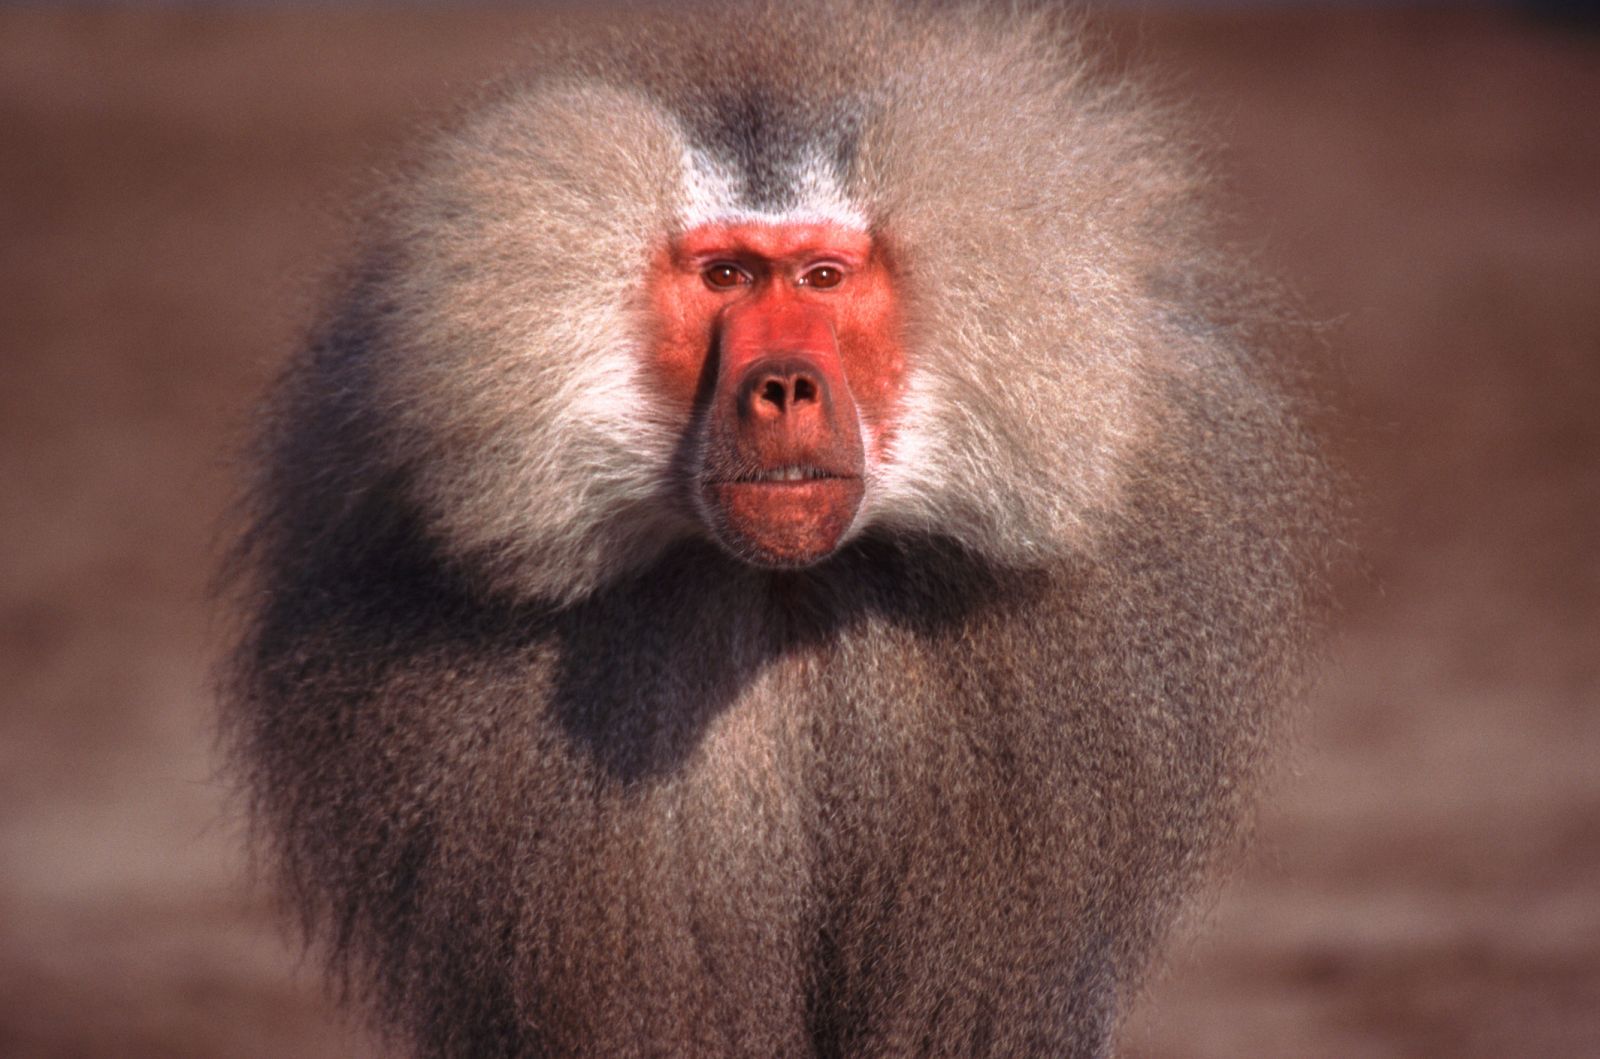 Un nuevo estudio señala que los monos babuinos son capaces de establecer analogías a pesar de no disponer de un lenguaje.